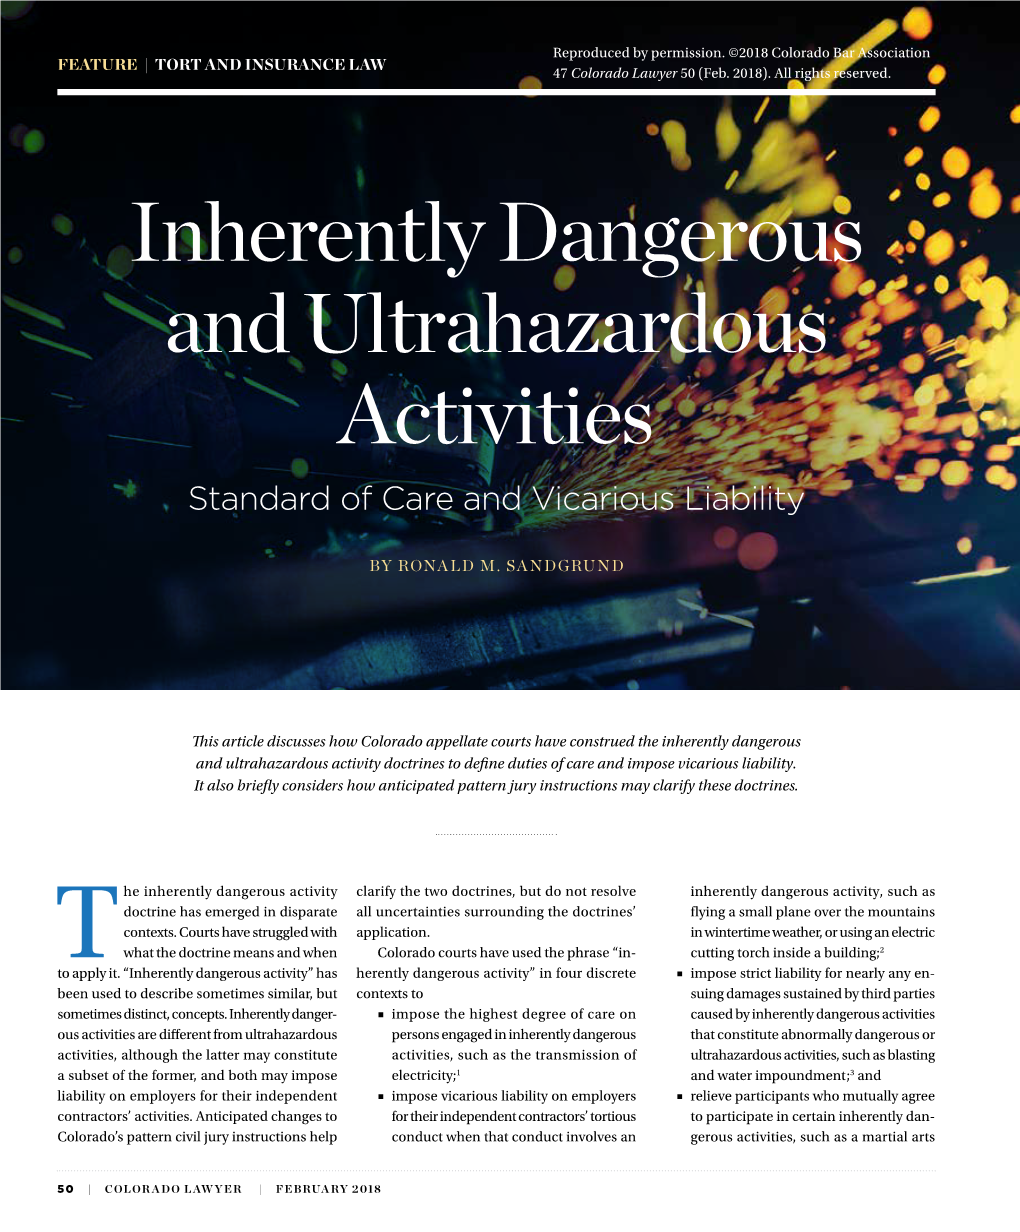 Inherently Dangerous and Ultrahazardous Activities: Standard